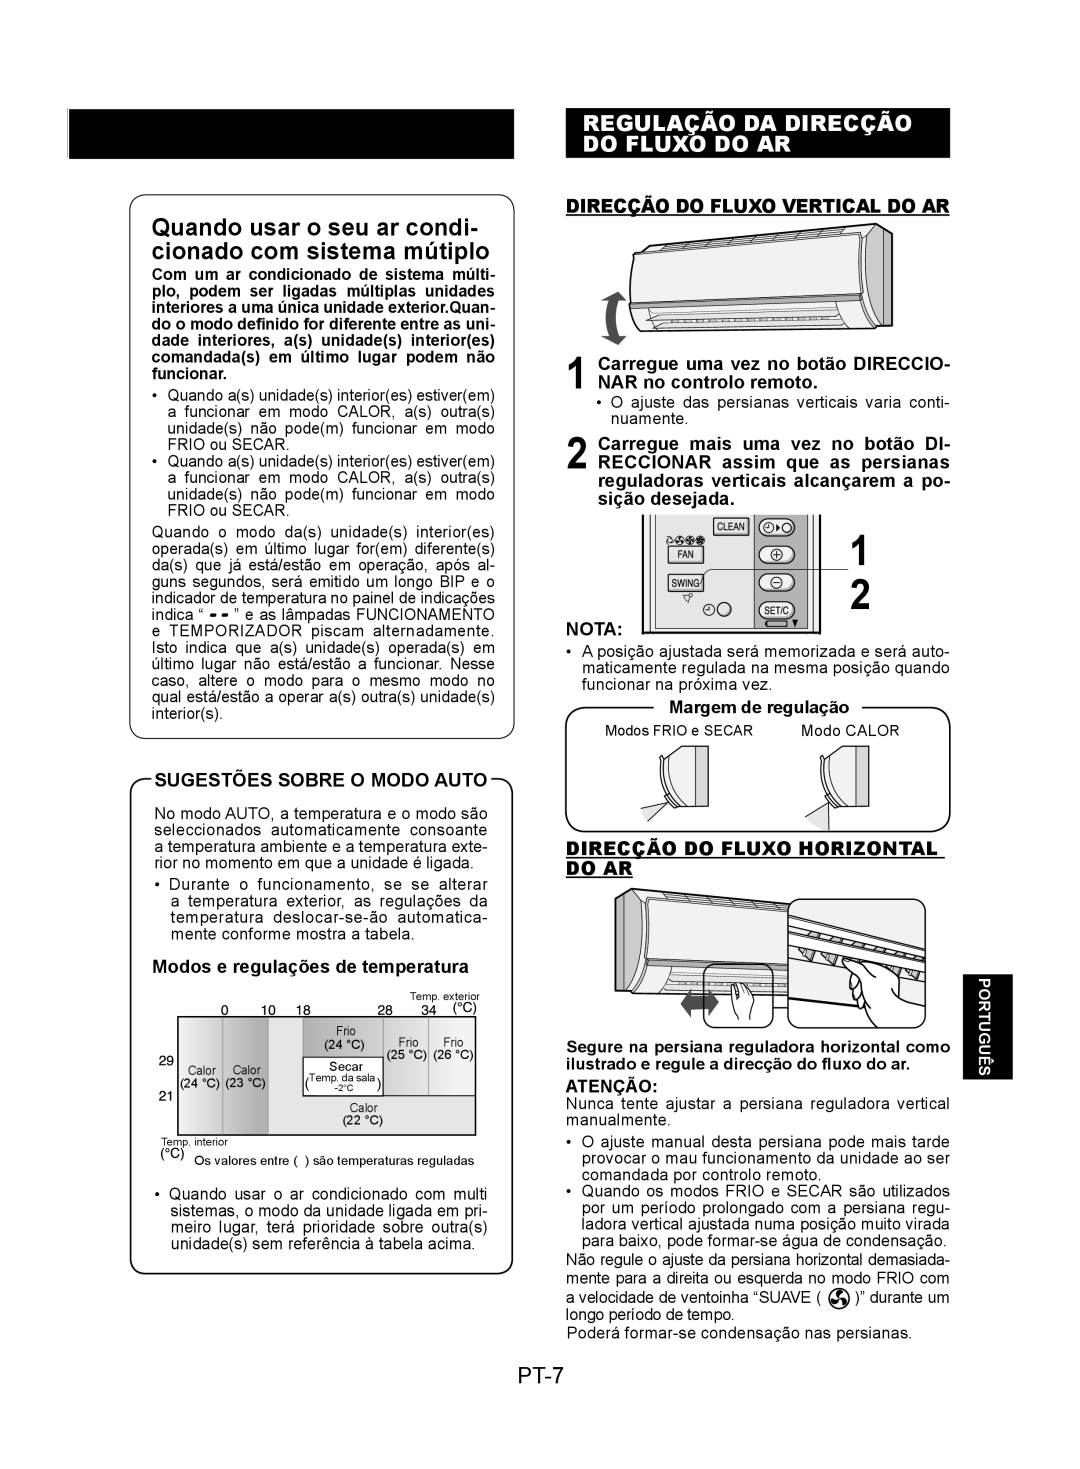 Sharp AY-XPC9JR Regulação Da Direcção Do Fluxo Do Ar, PT-7, Sugestões Sobre O Modo Auto, Direcção Do Fluxo Vertical Do Ar 